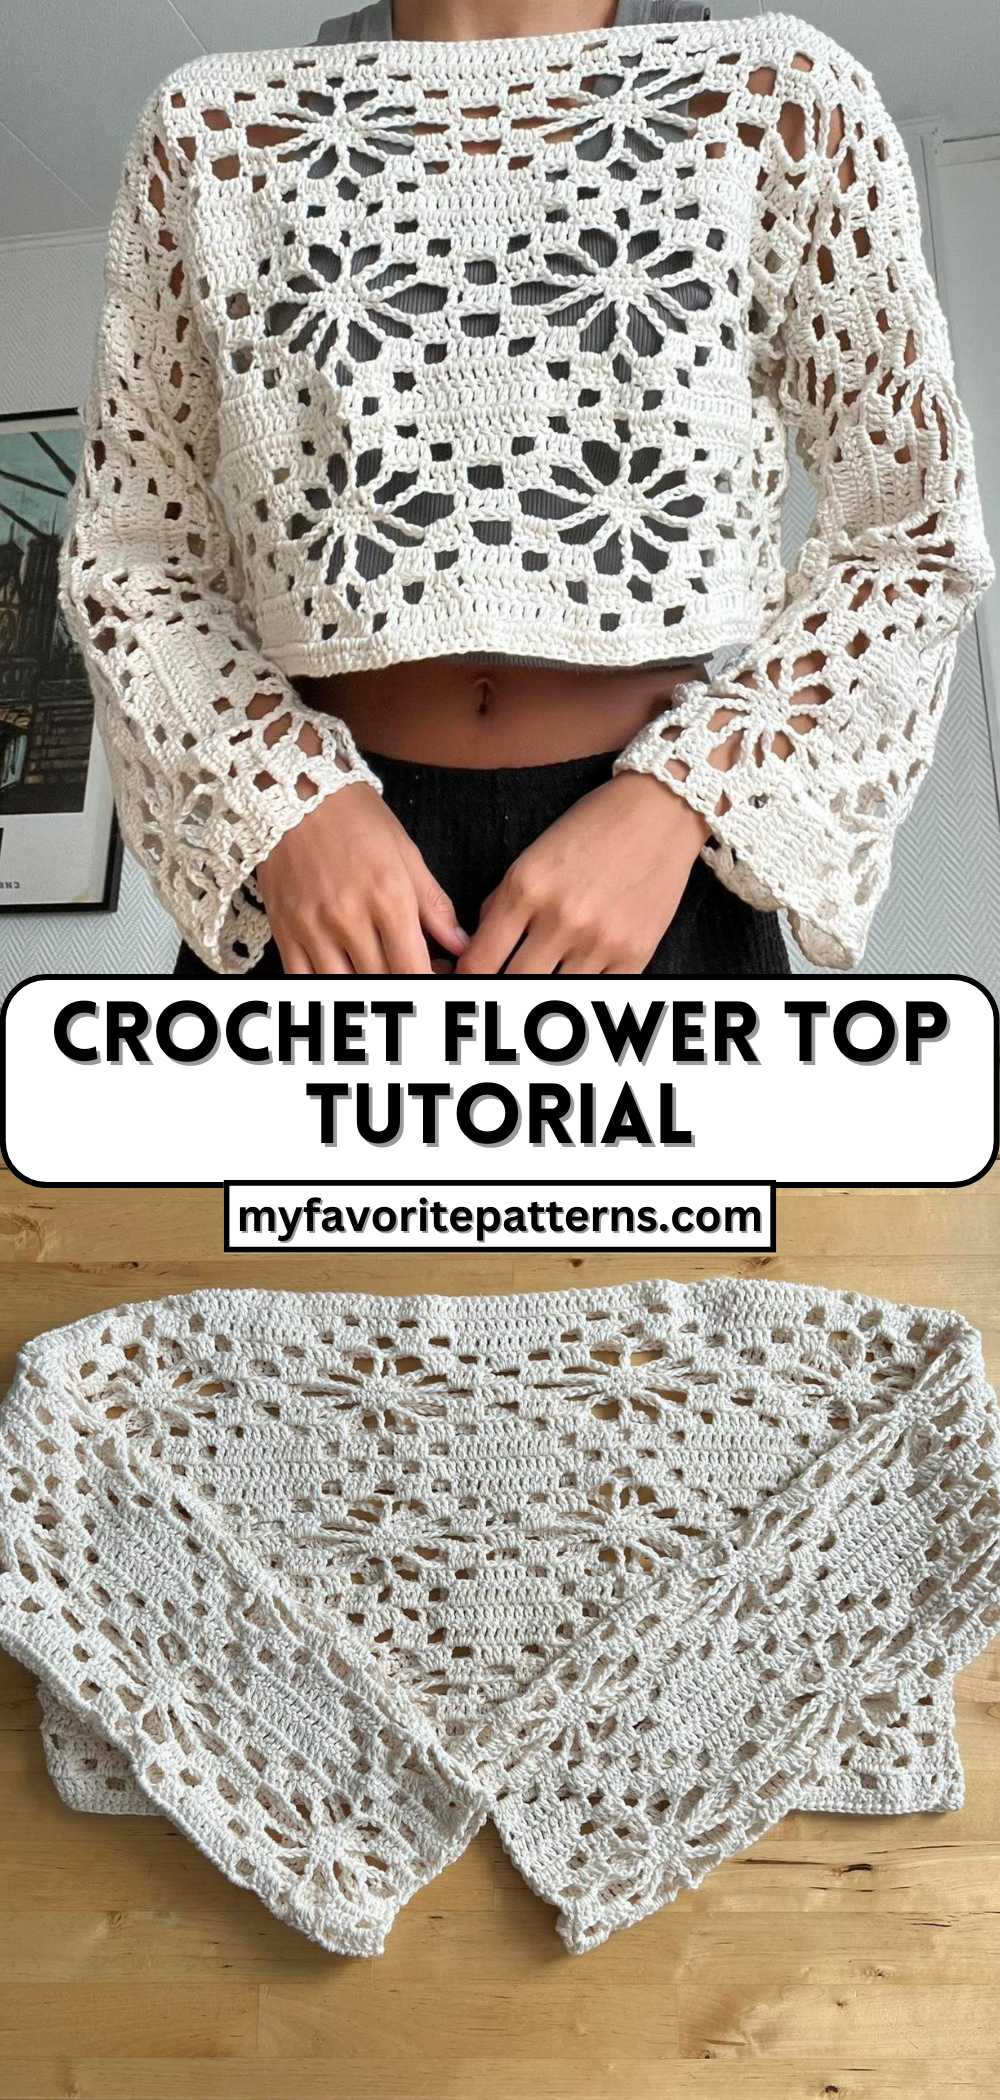 Crochet Flower Top Tutorial - Free Crochet Pattern - MyFavoritePatterns